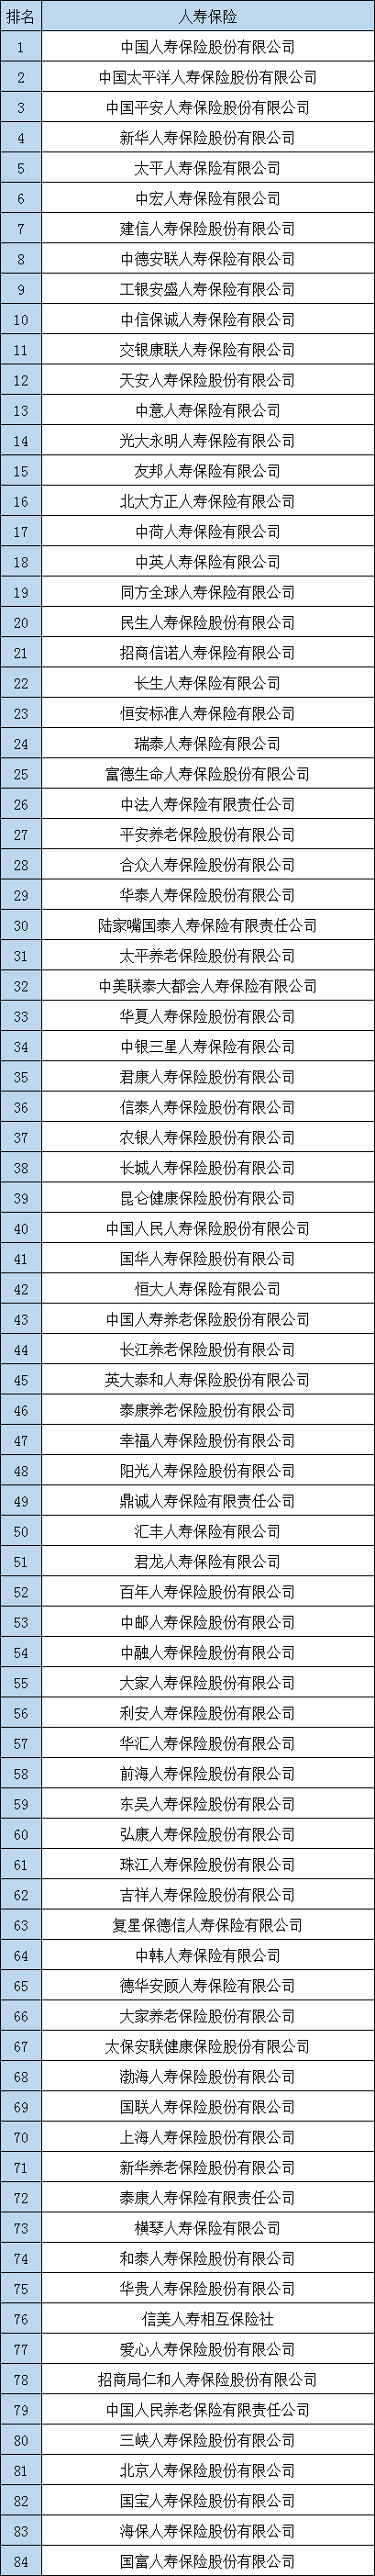 中国保险公司排名插图4